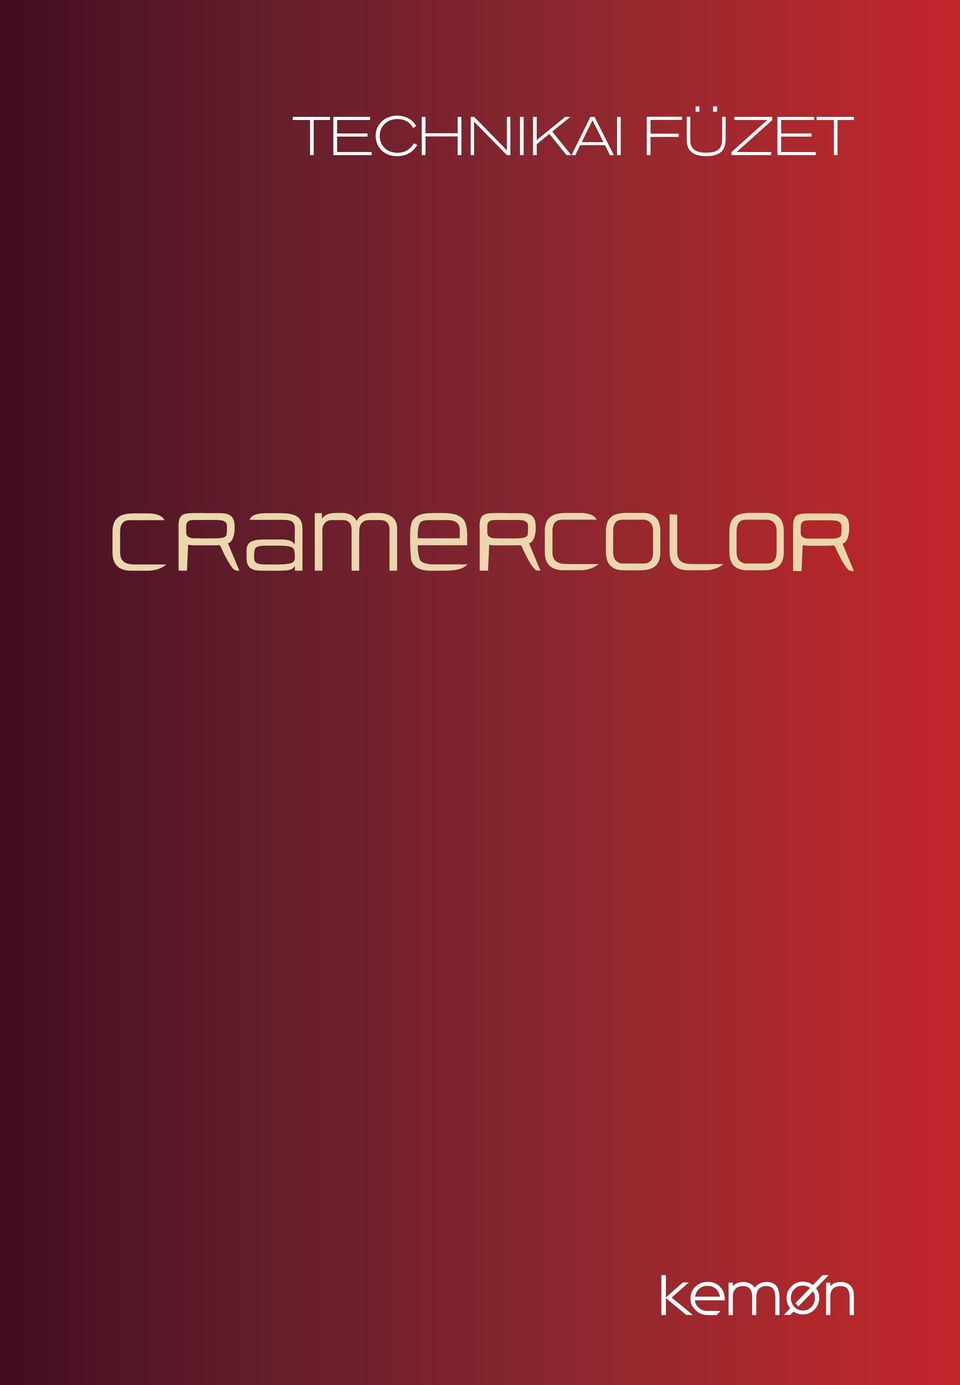 Cramer Color. 1. Bevezetés a Cramer Color világába. 2. Technológia. 3.  Színpaletta. 4. Színkör. 5. Cramer Color fókusz színek. 6. Használati  utasítás - PDF Ingyenes letöltés